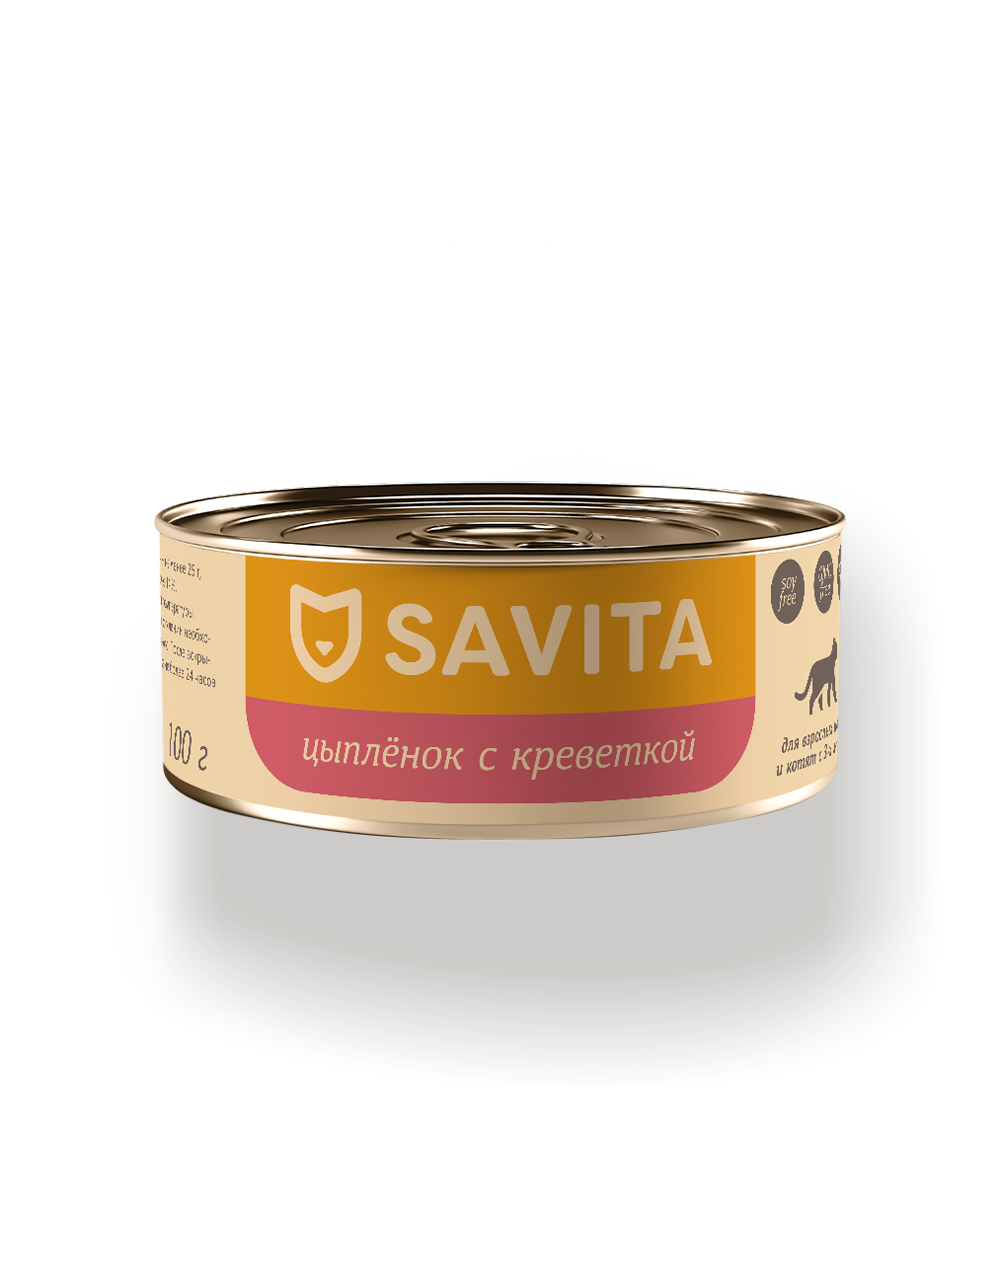 Savita 100 г - консервы для кошек и котят с цыплёнком и креветками